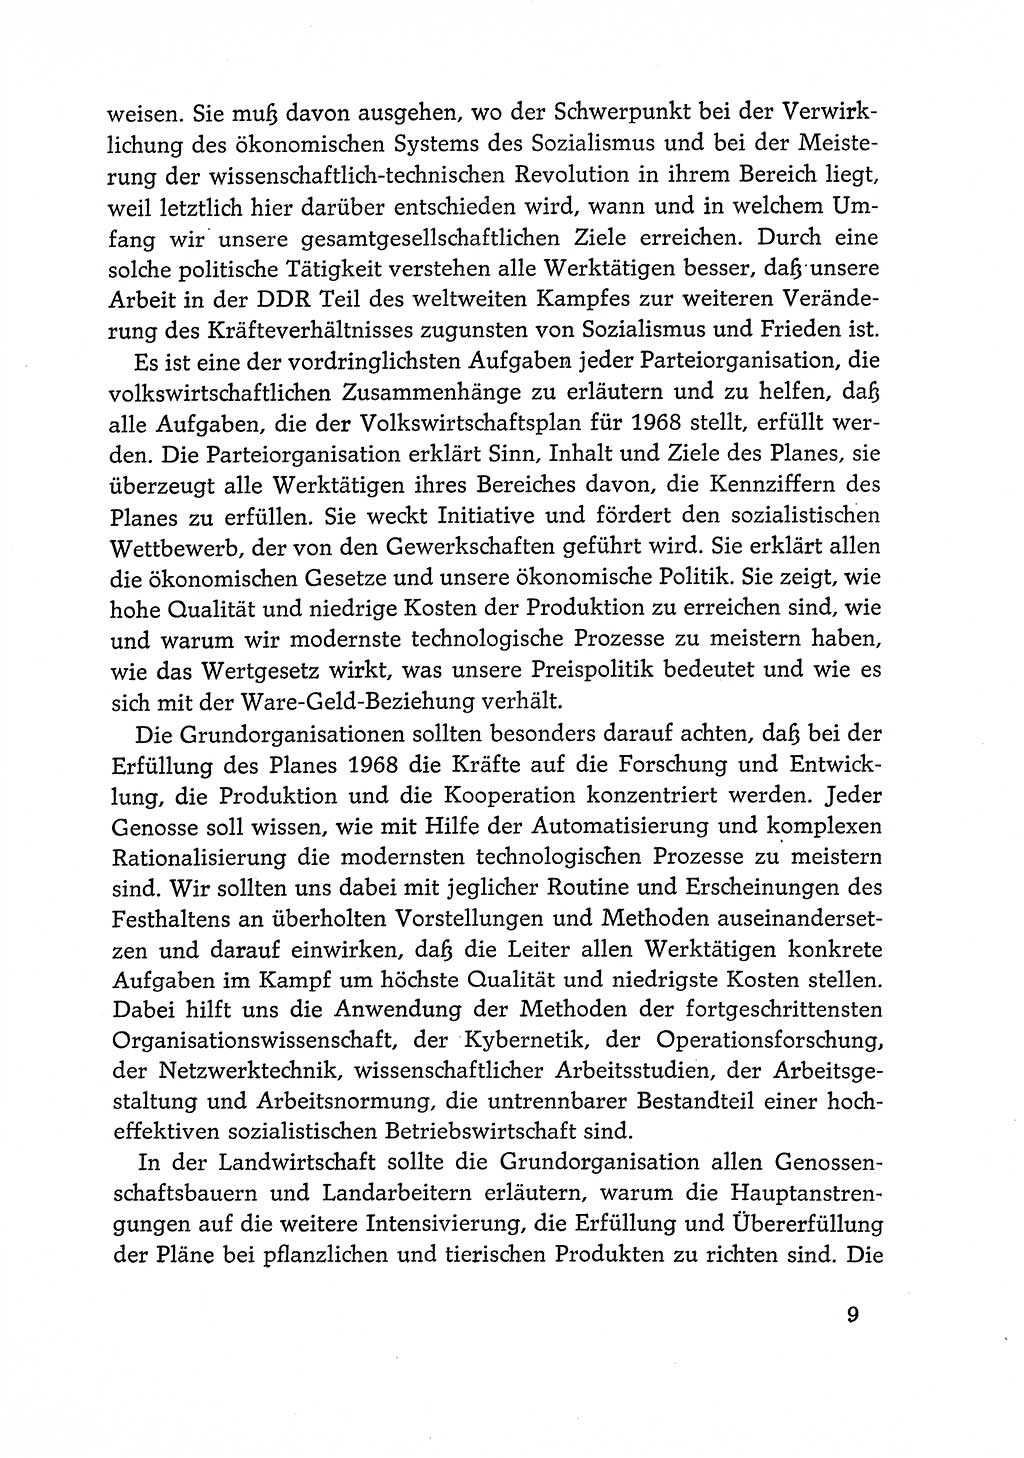 Dokumente der Sozialistischen Einheitspartei Deutschlands (SED) [Deutsche Demokratische Republik (DDR)] 1968-1969, Seite 9 (Dok. SED DDR 1968-1969, S. 9)